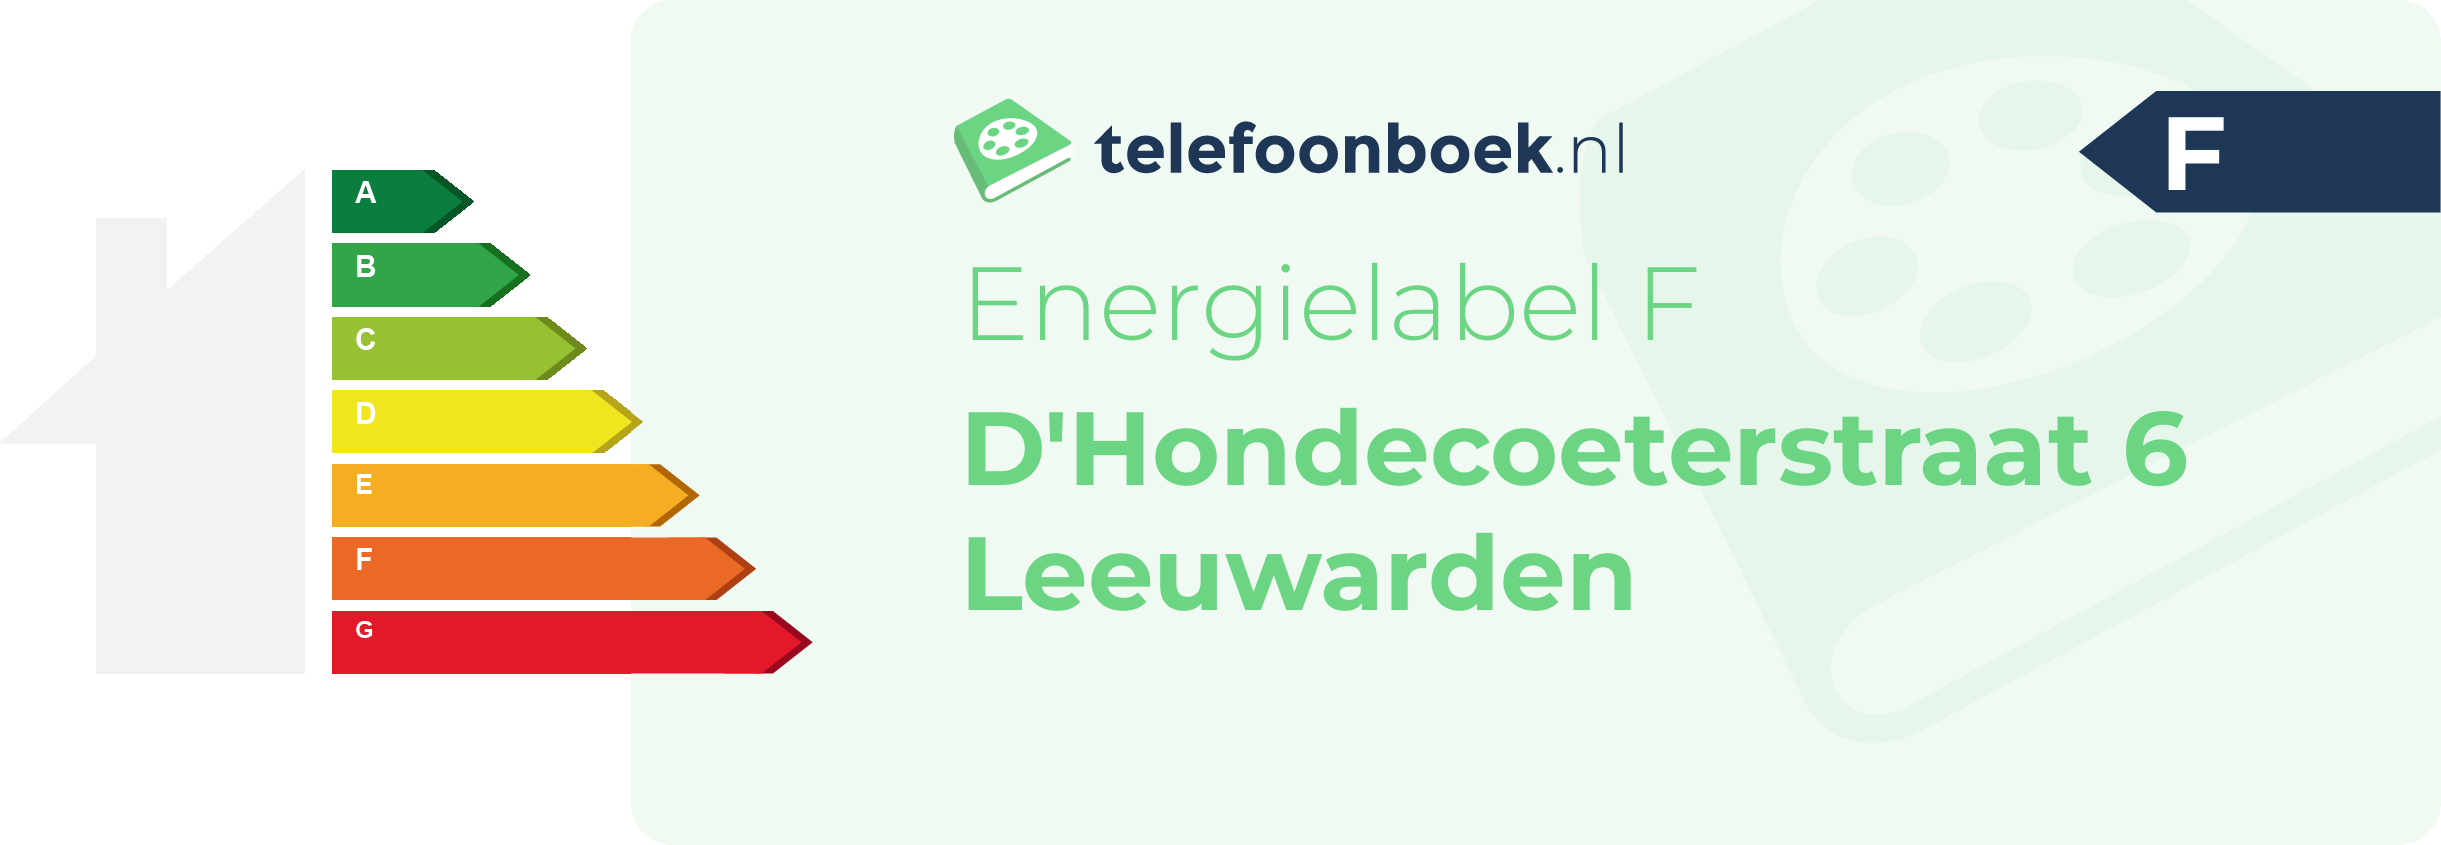 Energielabel D'Hondecoeterstraat 6 Leeuwarden